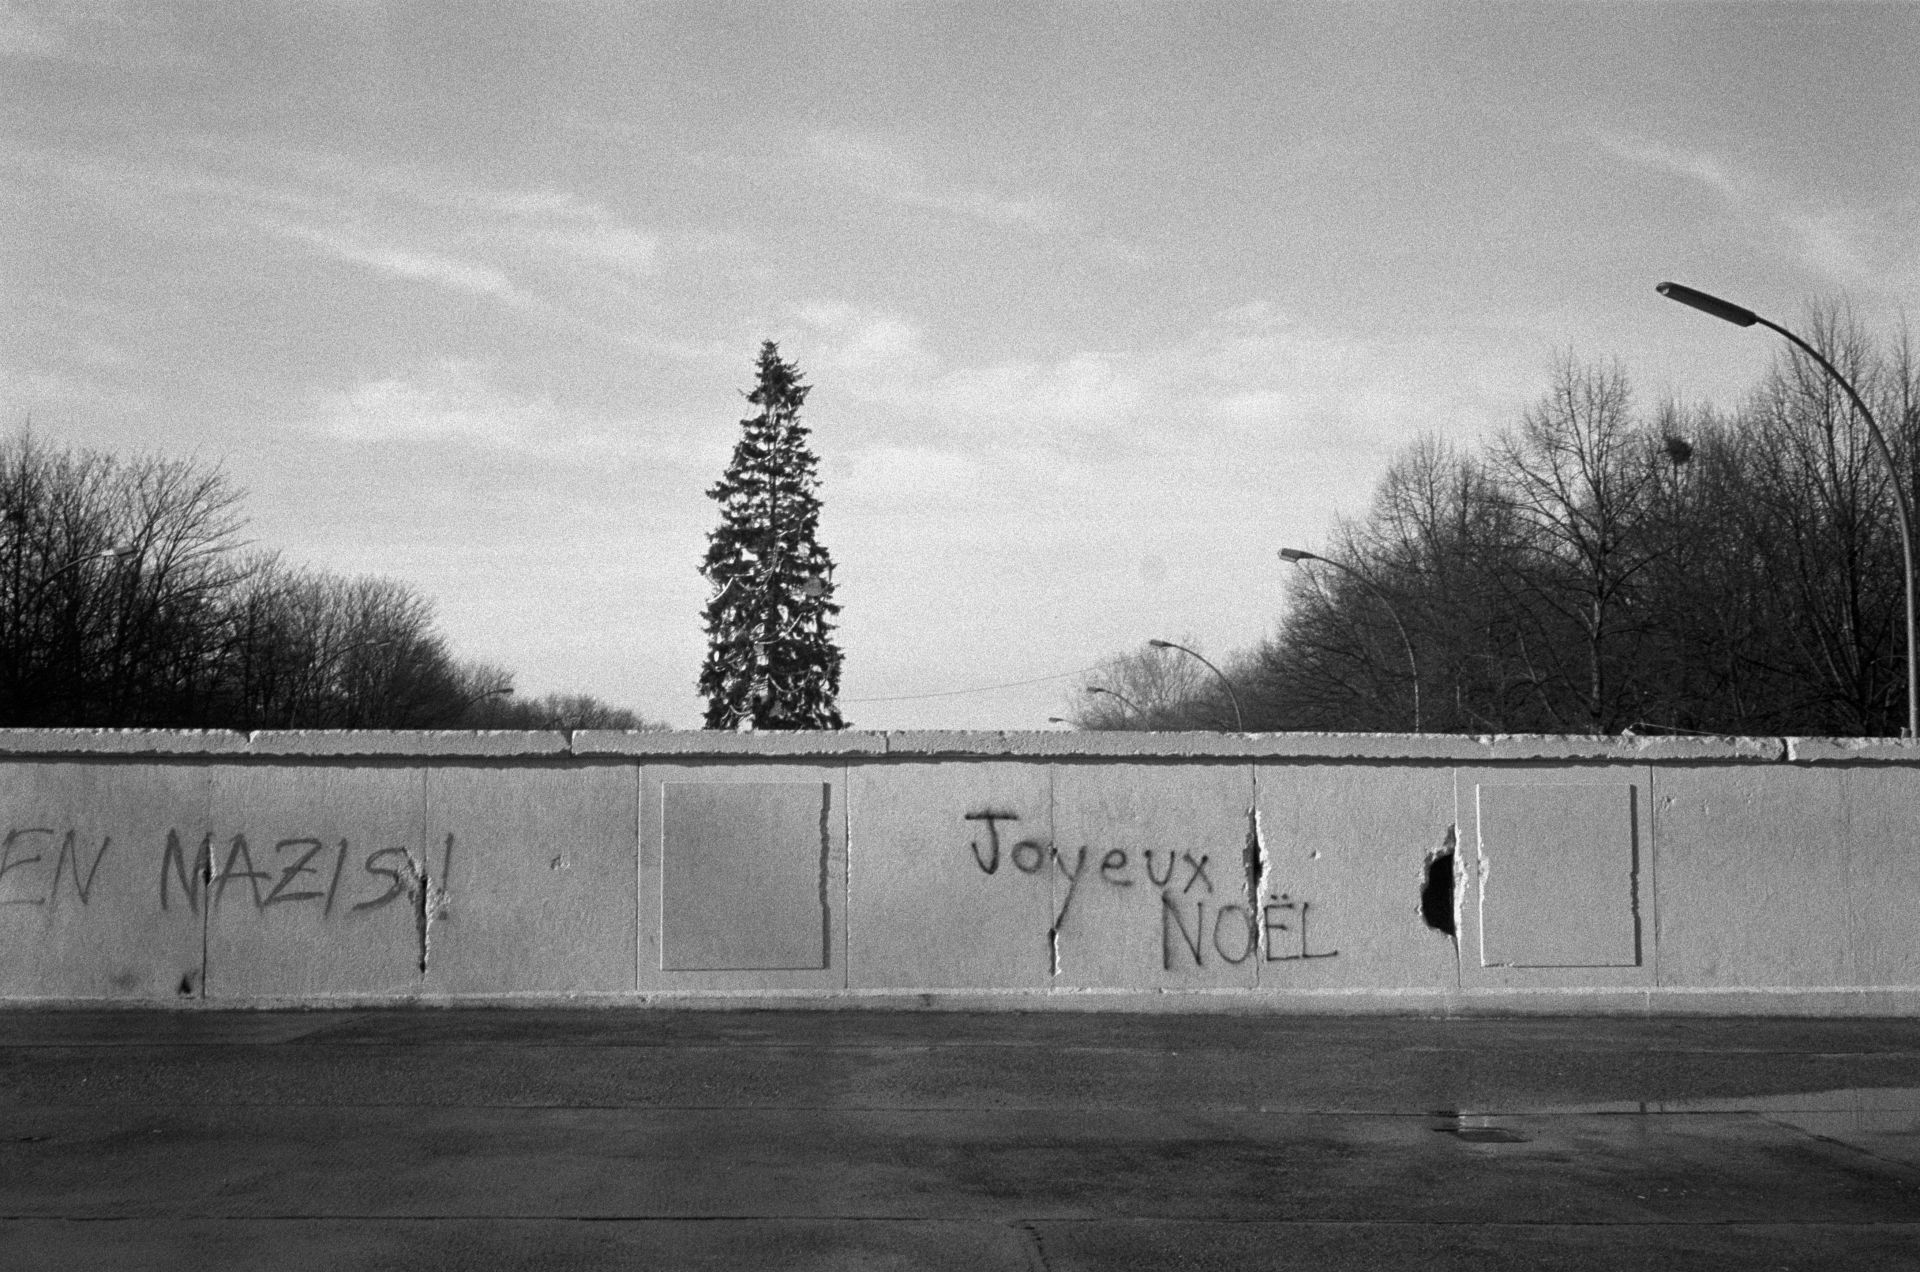 Първите графити по Берлинската стена се появяват още в годината на събарянето ѝ - 1989 г.  На снимката се вижда украсена Коледна елха от западната страна на стената